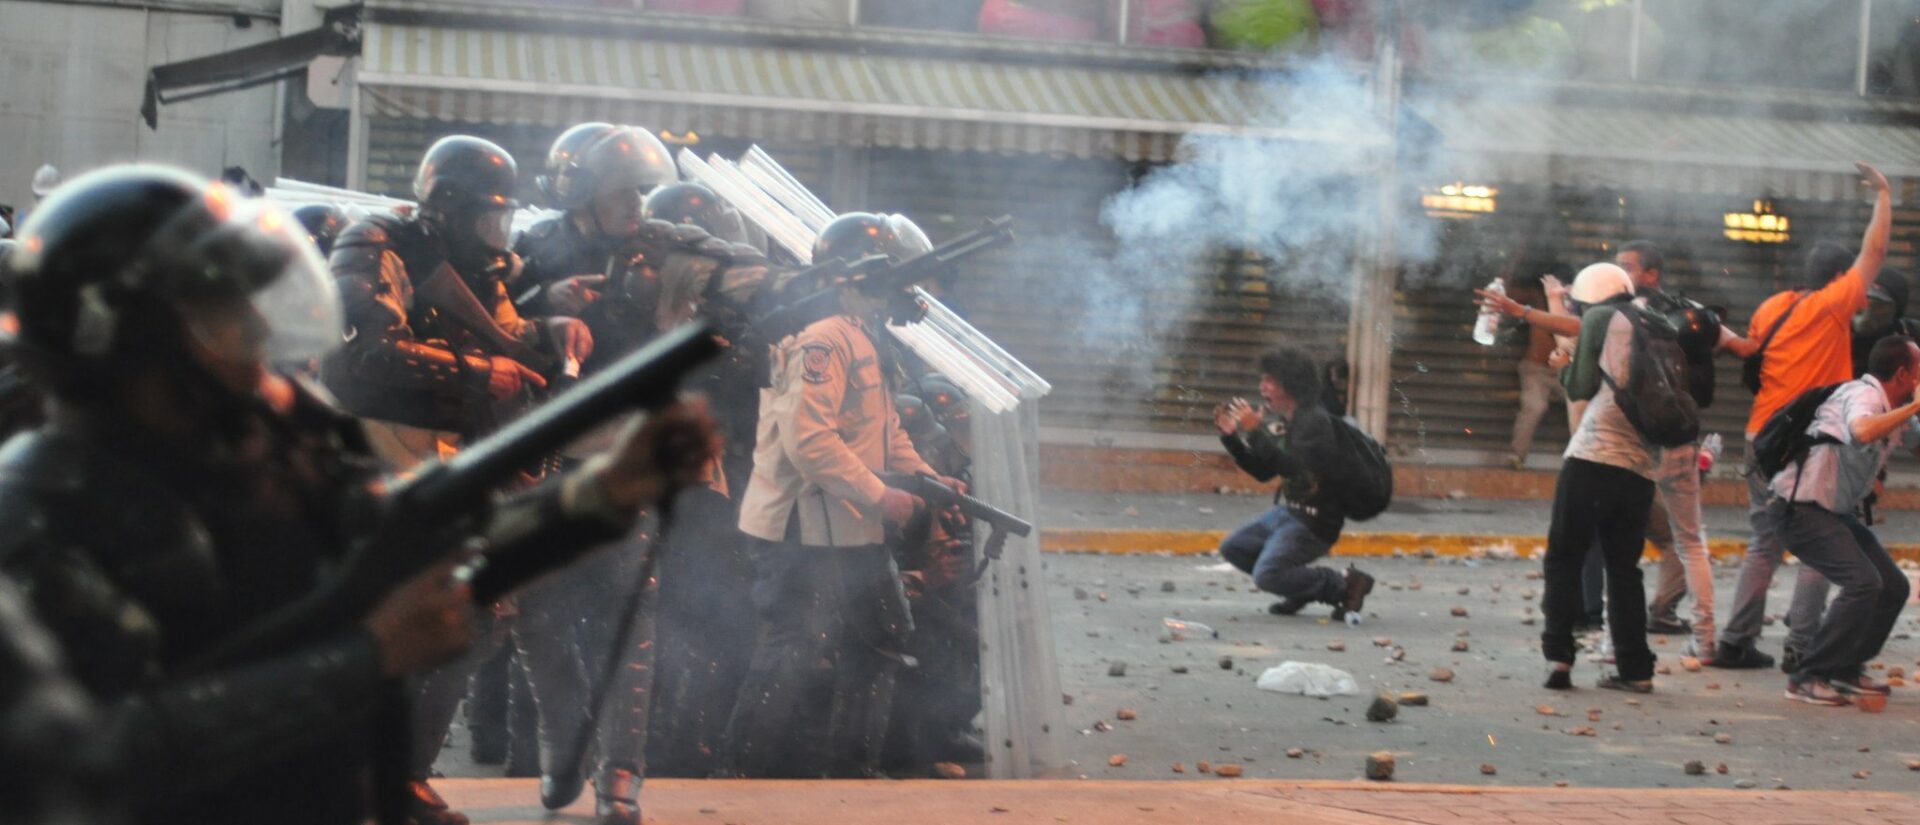 Le Venezuela s'enfonce dans la crise politique et économique | © AndresAzp/Flickr/CC BY-ND 2.0